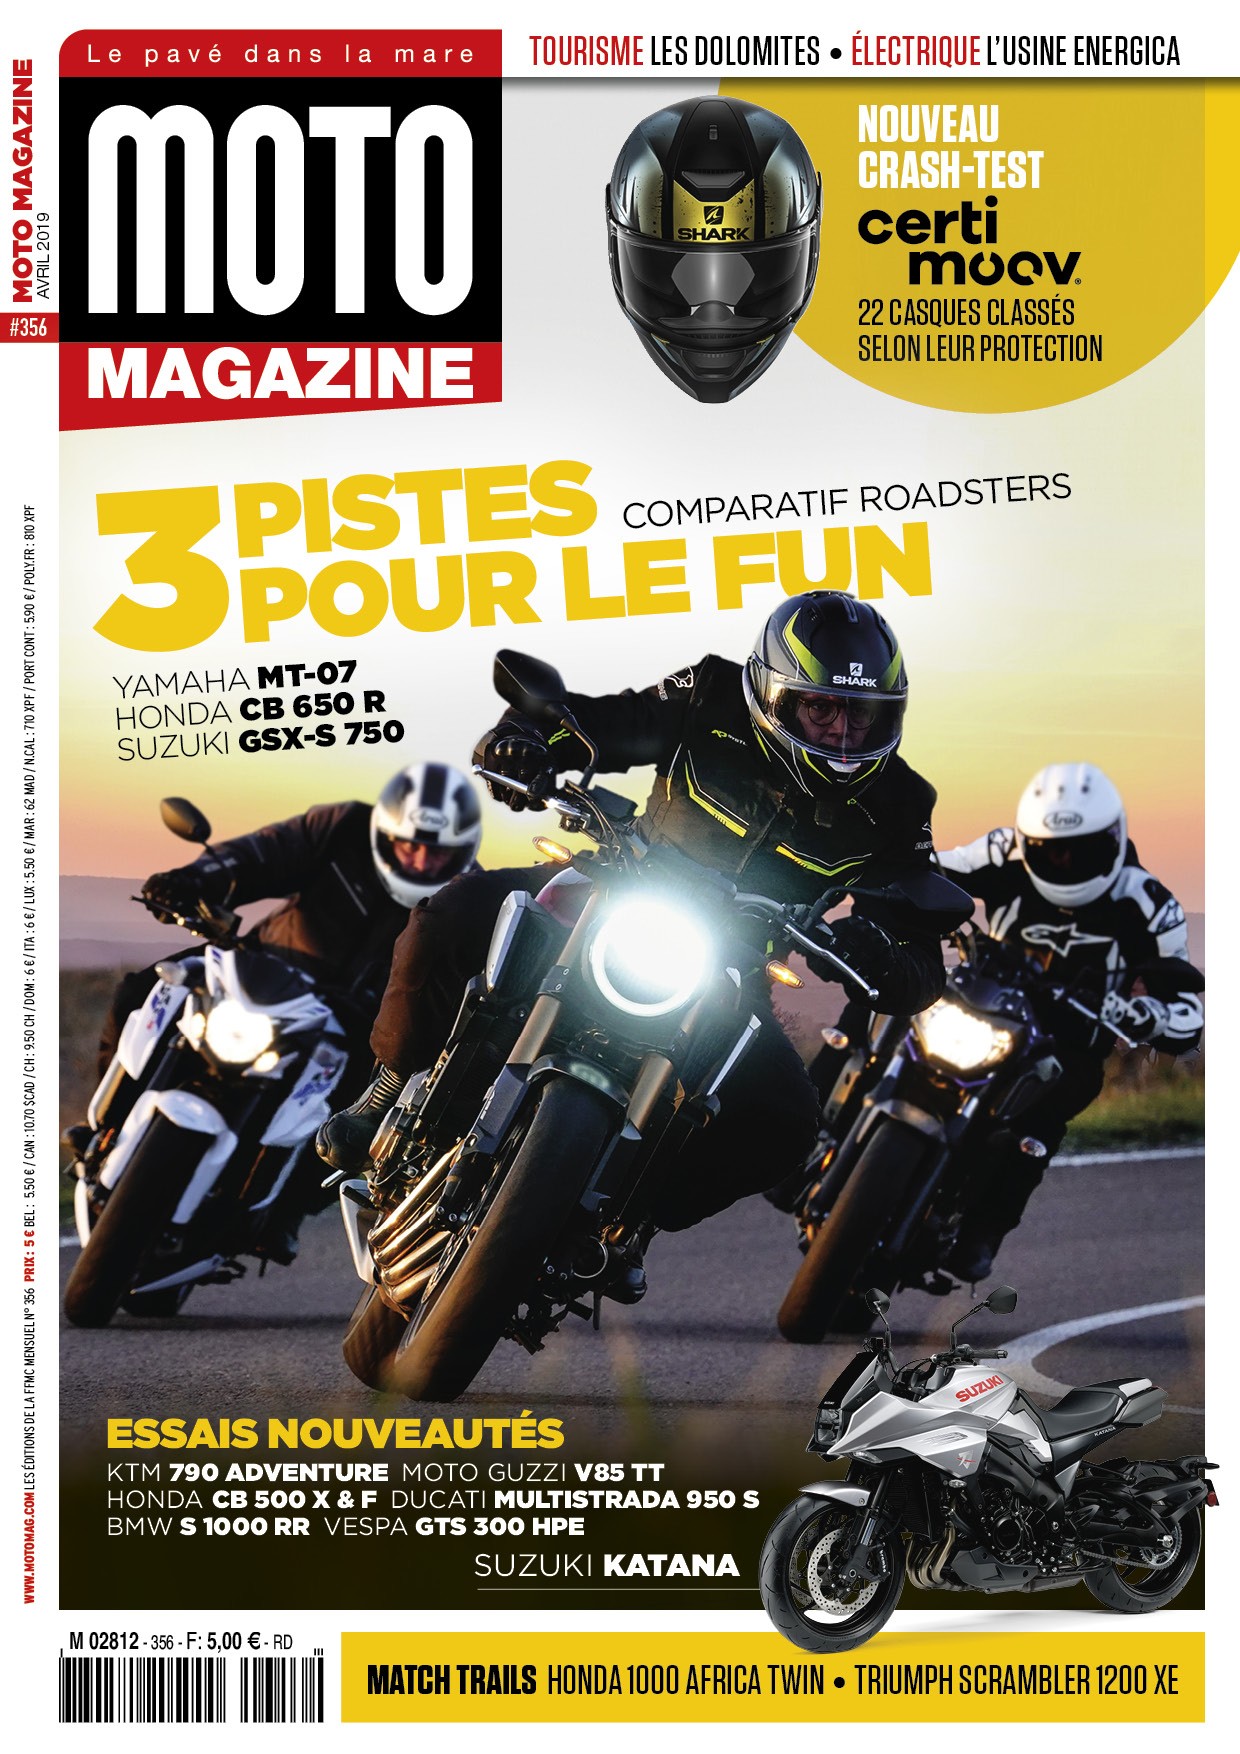 Moto Magazine n°356 - Avril 2019